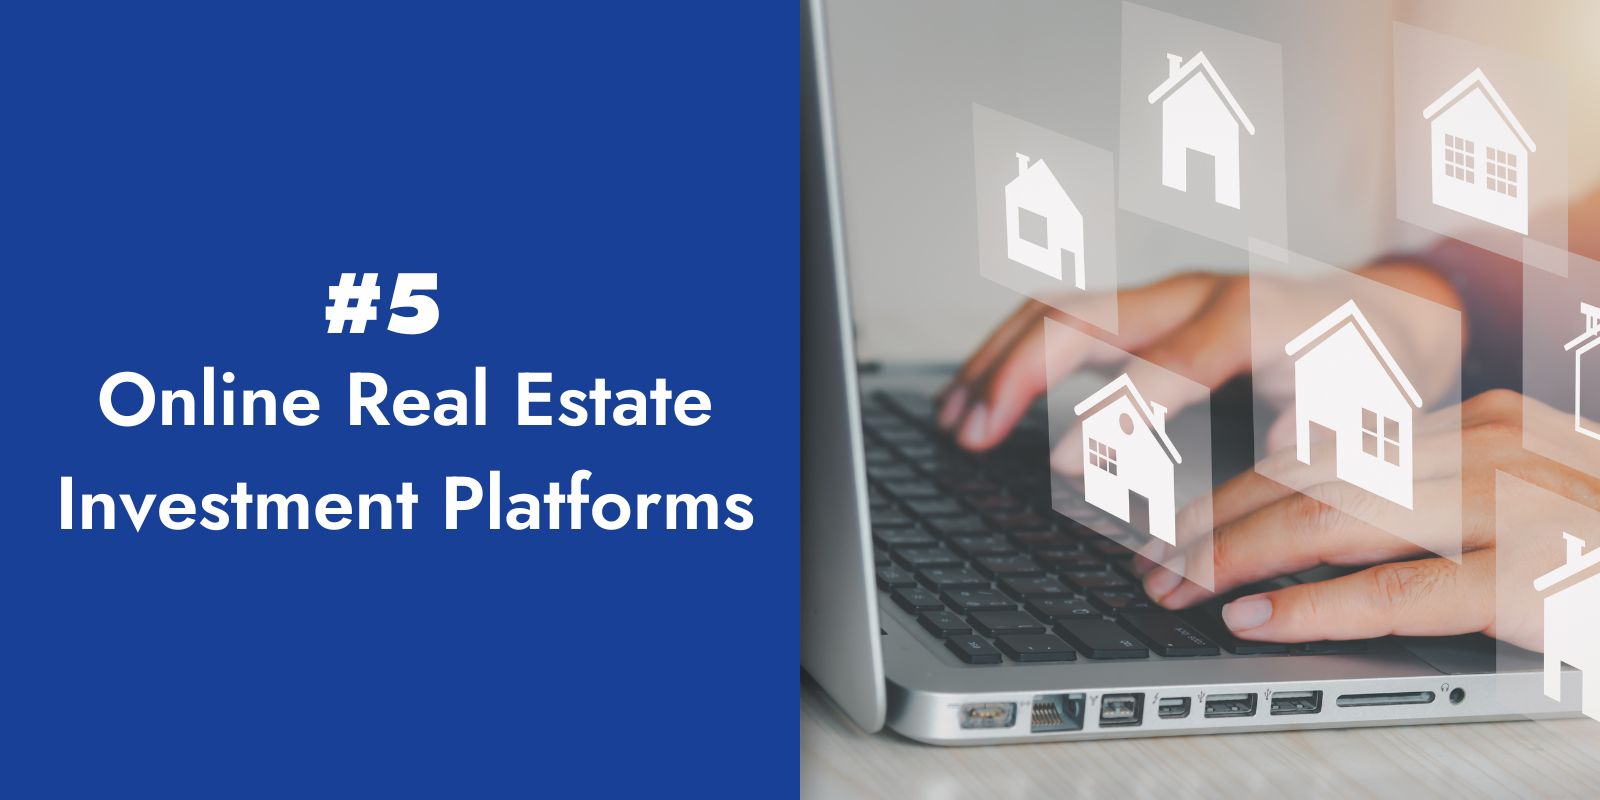 5. Online Real Estate Investment Platforms